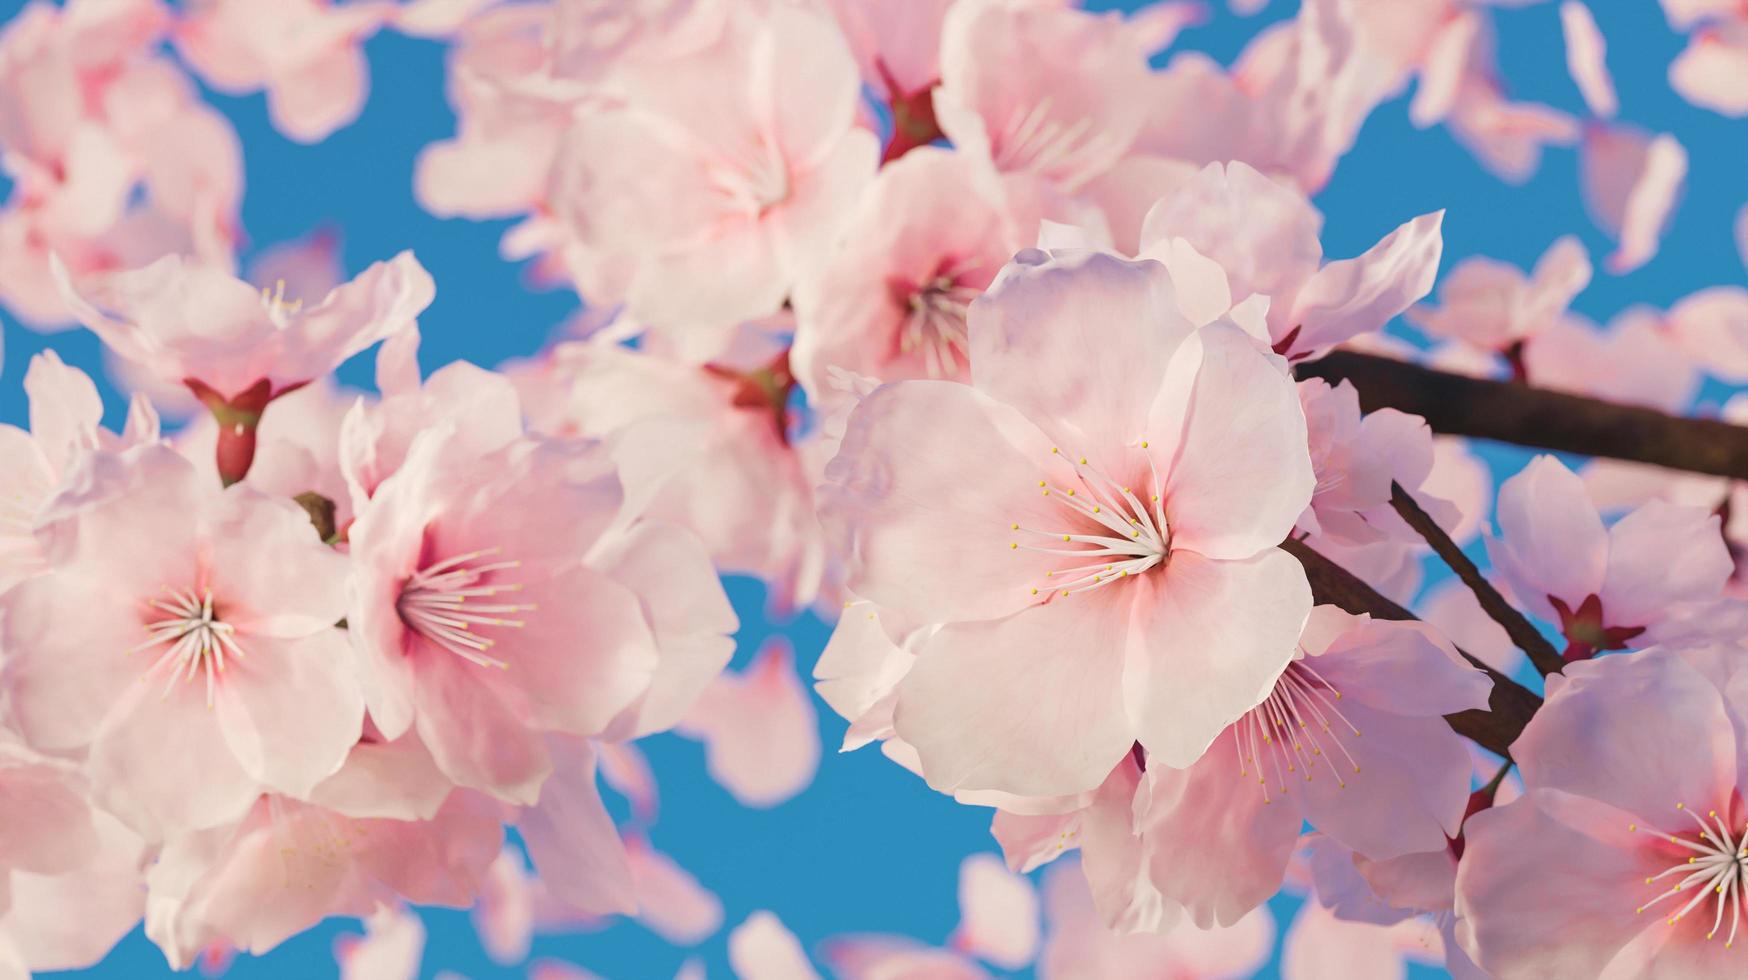 primo piano di fiori di ciliegio con un sacco di petali, rendering 3d foto